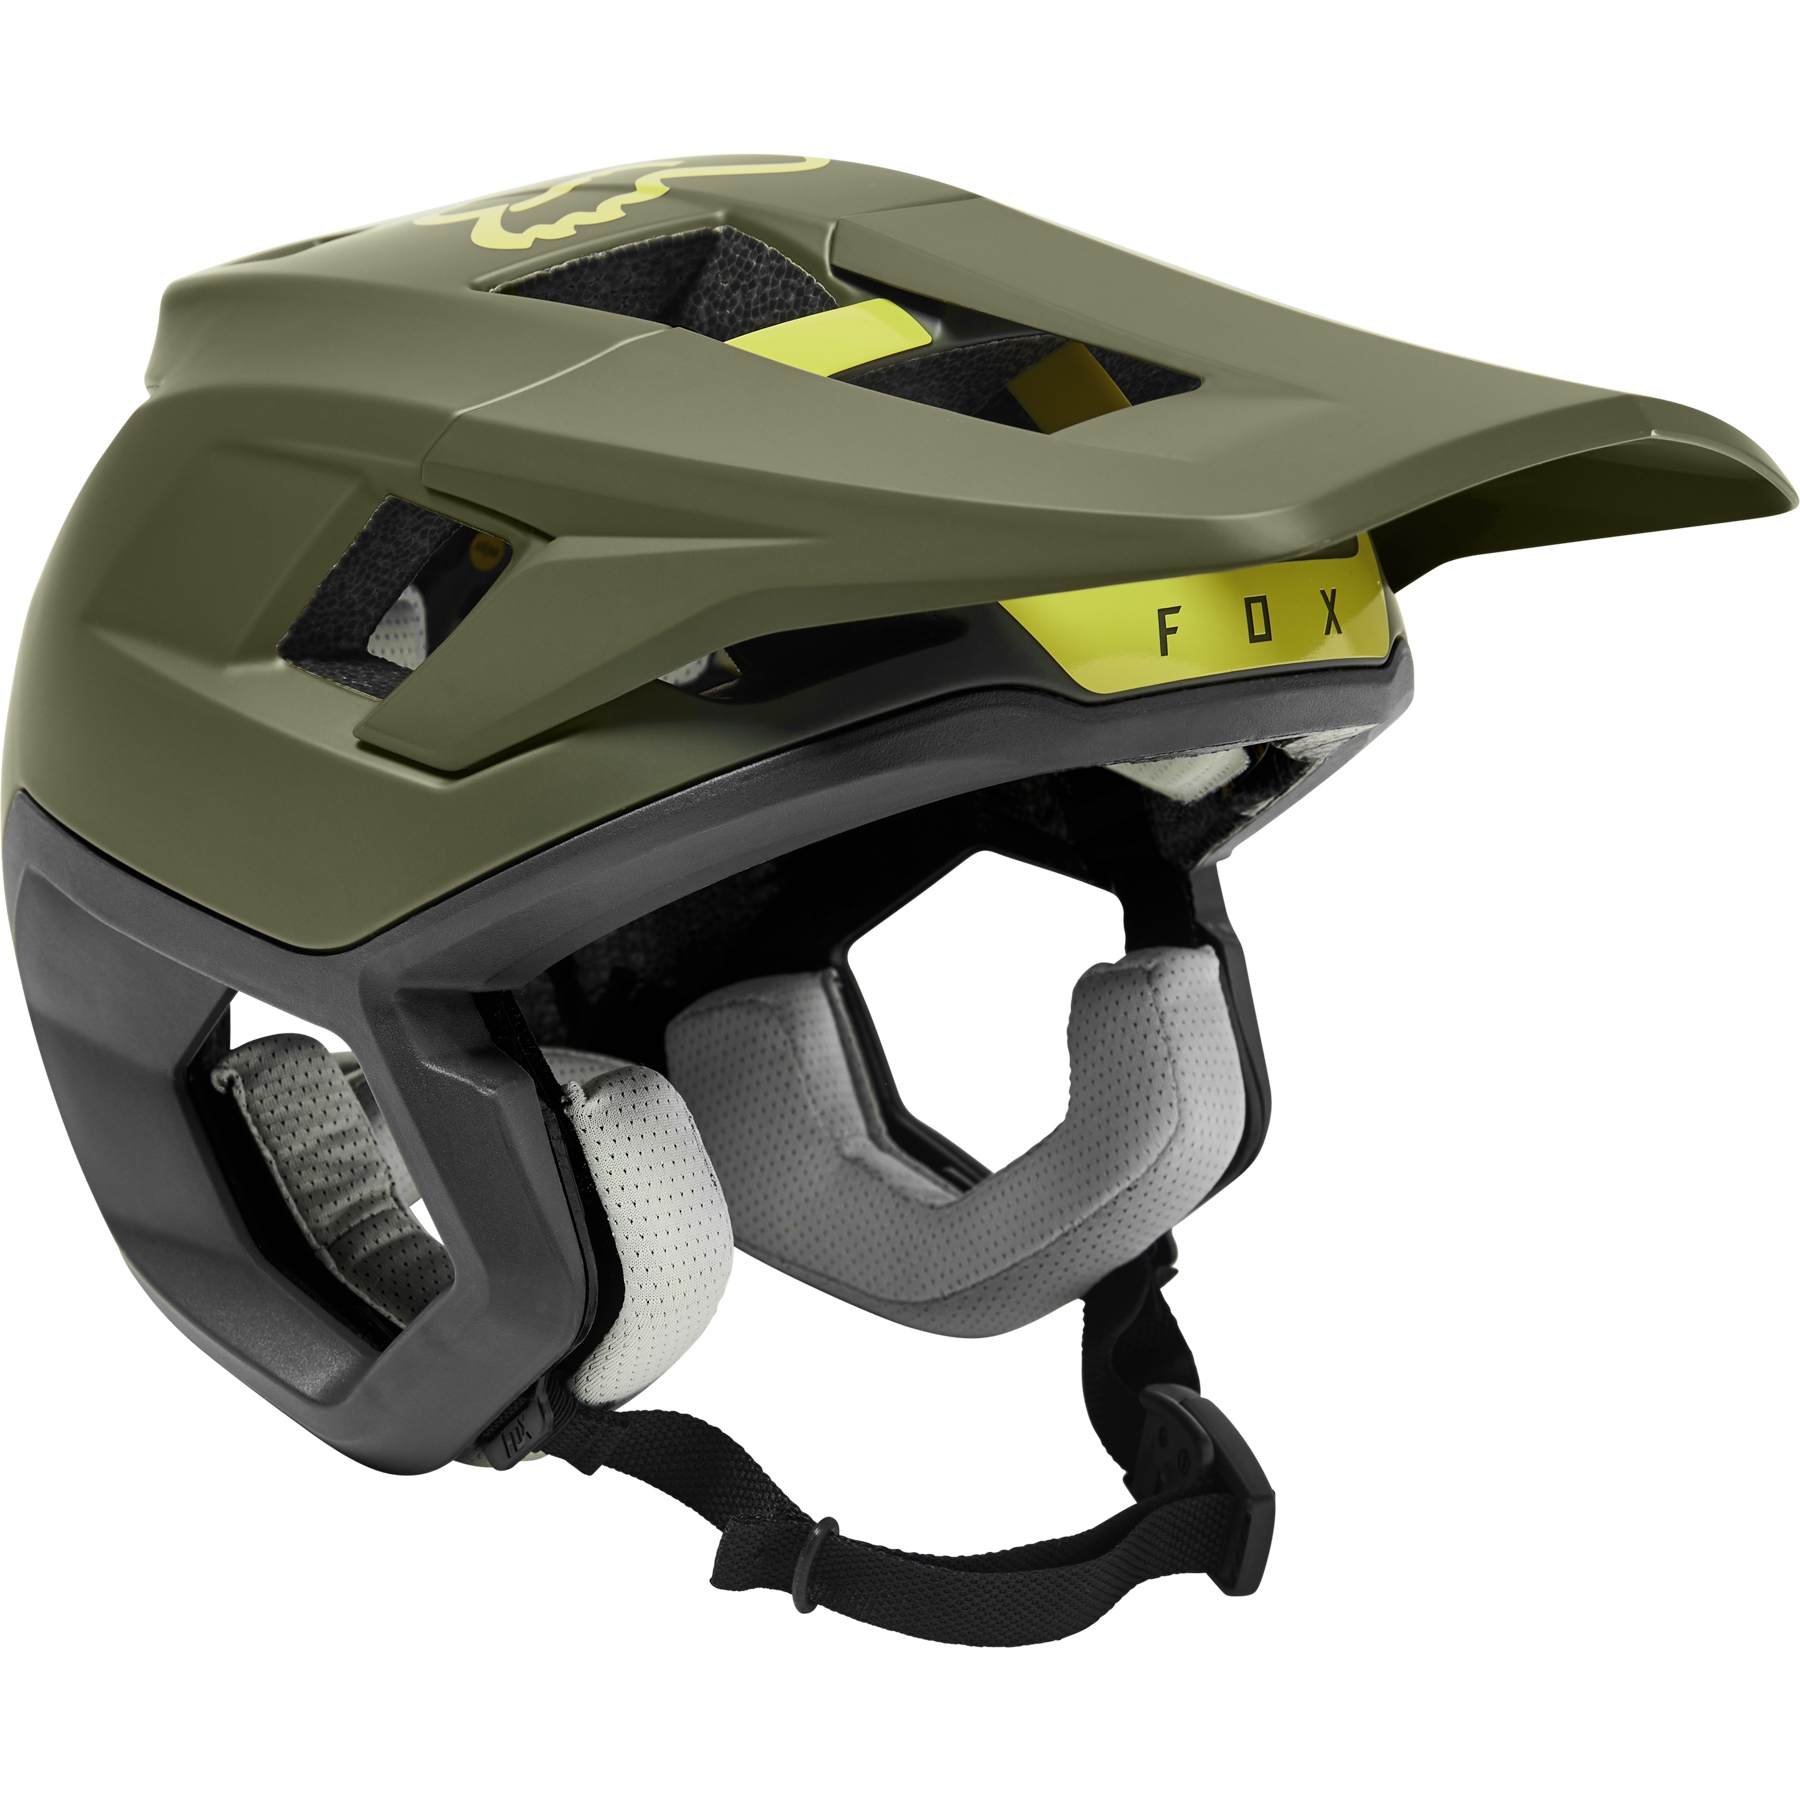 Produktbild von FOX Dropframe Pro Trail Helm - oliv grün